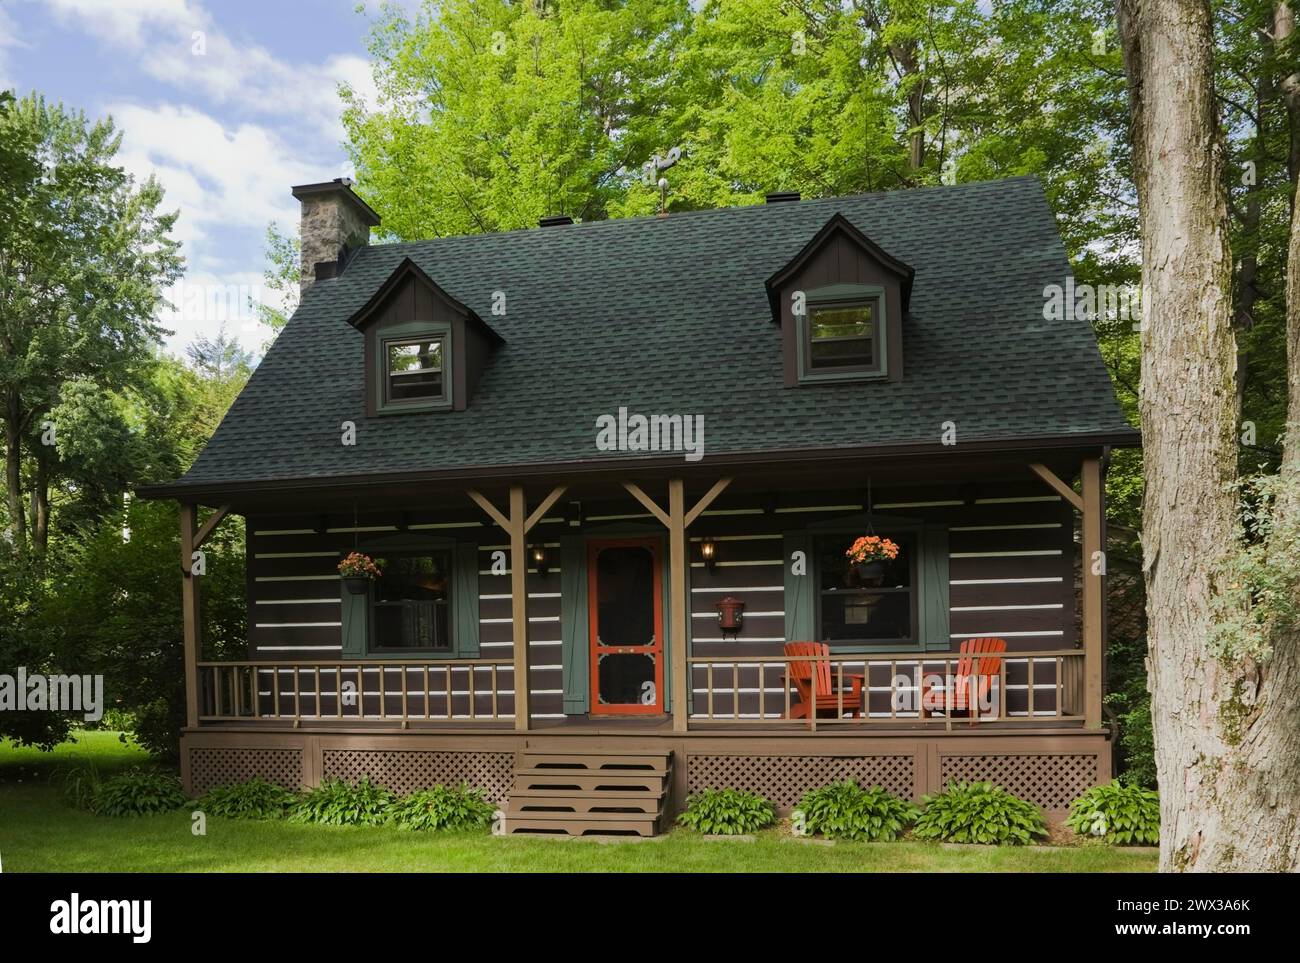 Facciata casalinga in stile cottage canadese di legno marrone a due piani con finiture verdi e rosse con lunga veranda in estate, Quebec, Canada Foto Stock